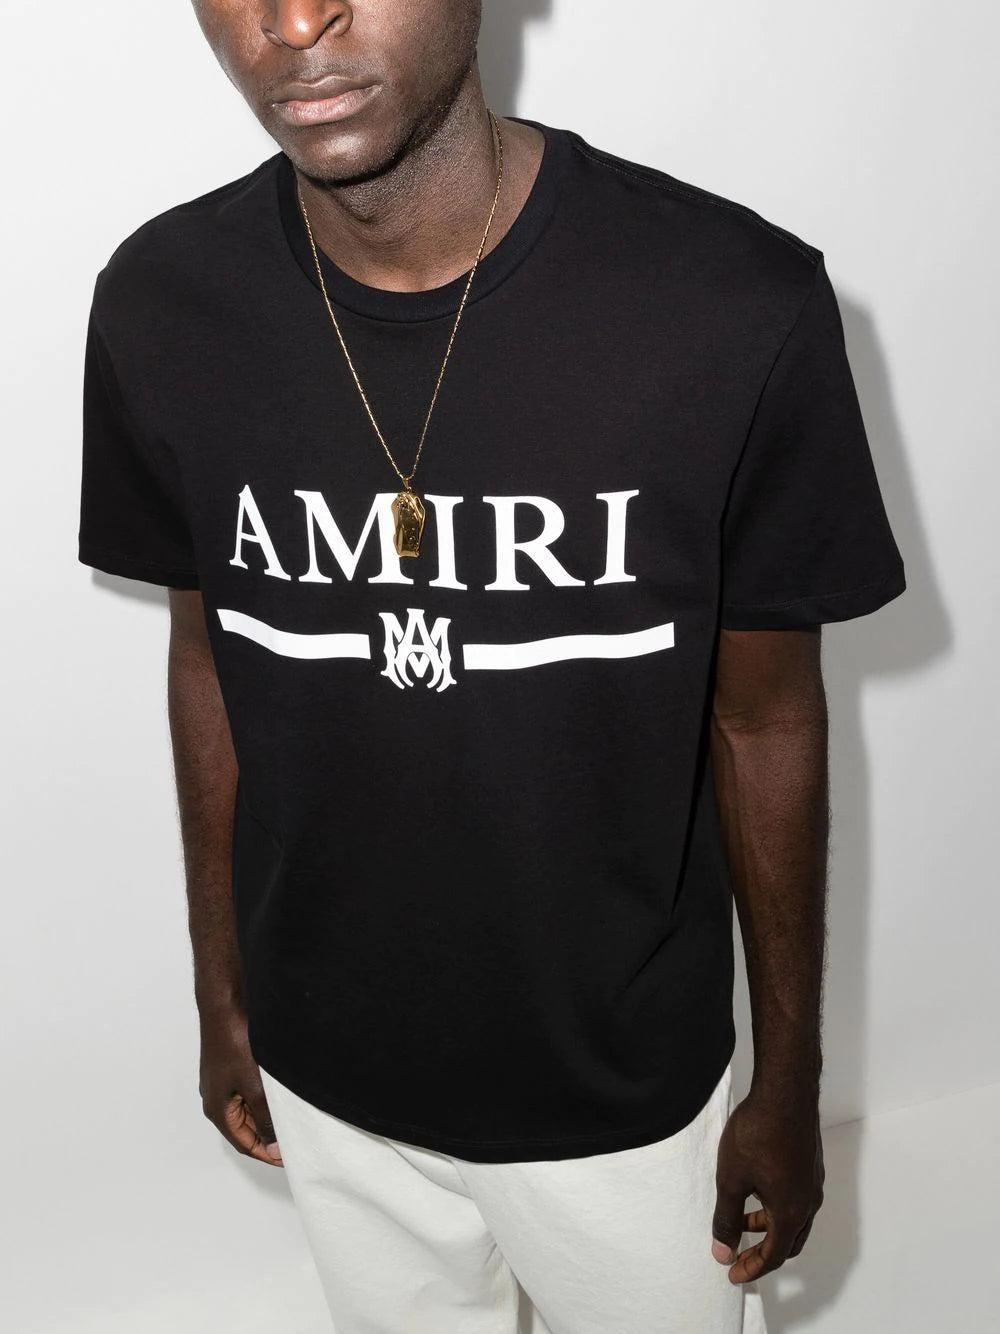 Amiri Logo T-shirt cotton Tee-colorful Logo AMIRI T-shirt 